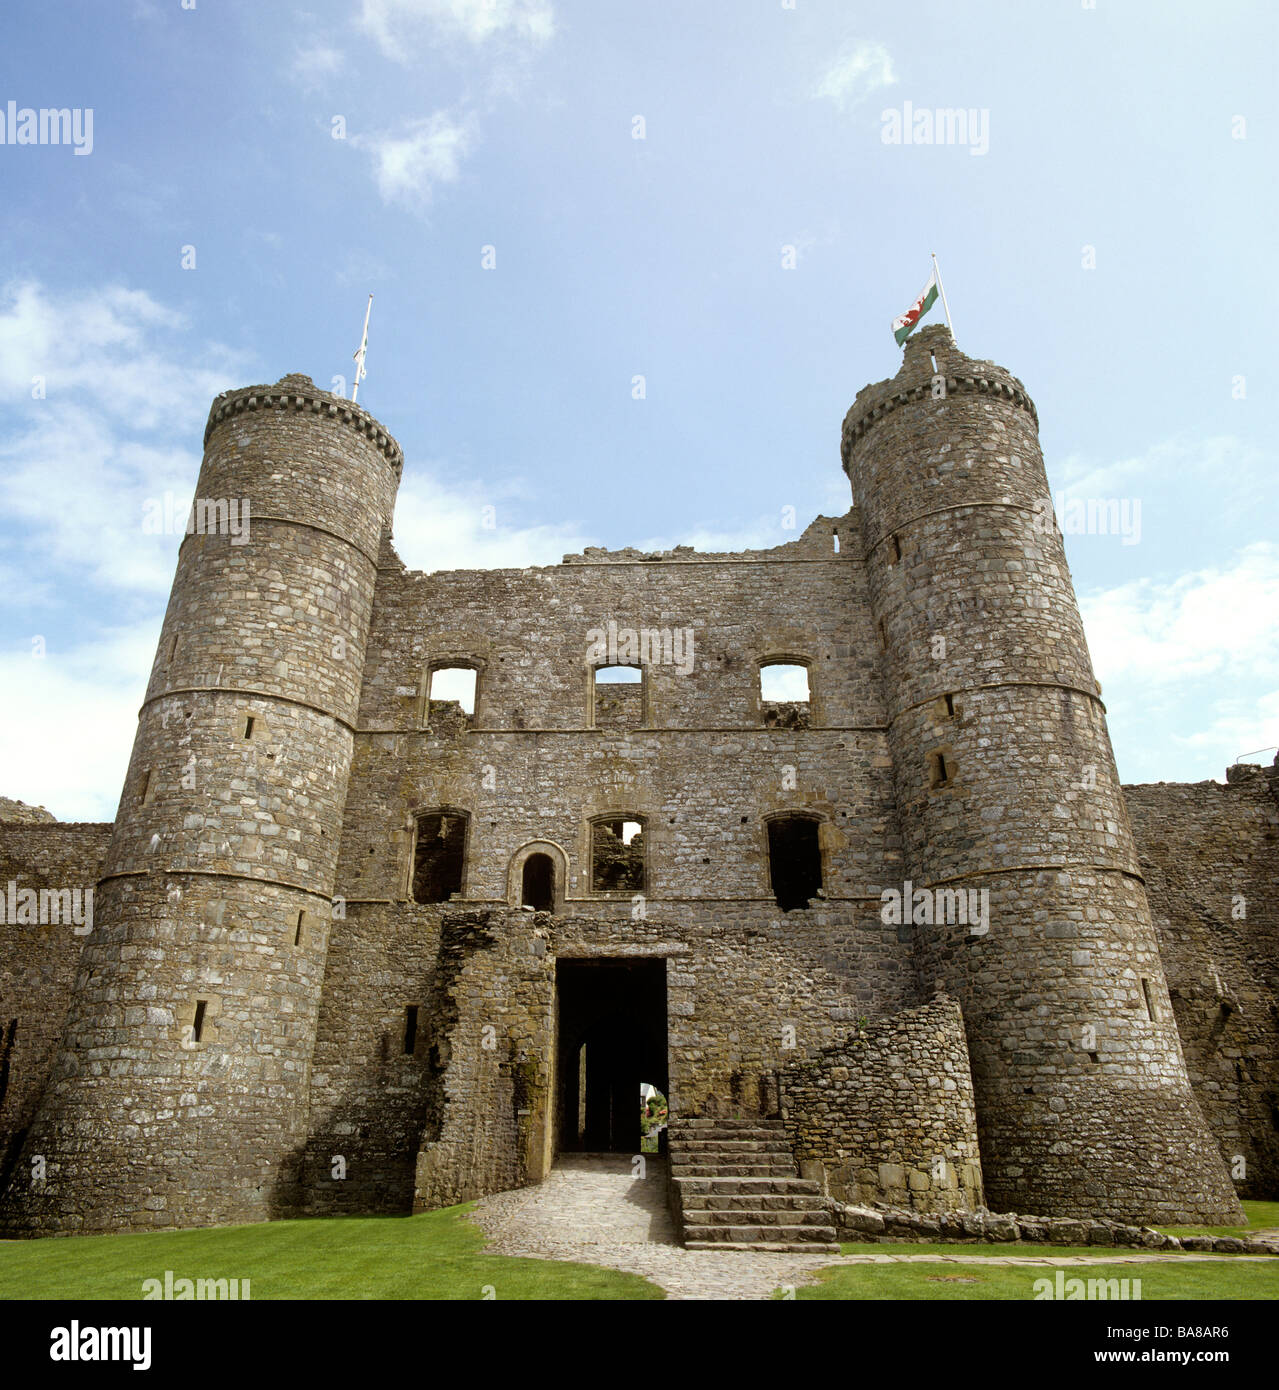 UK Wales Gwynedd Harlech Castle main accommodation tower Stock Photo